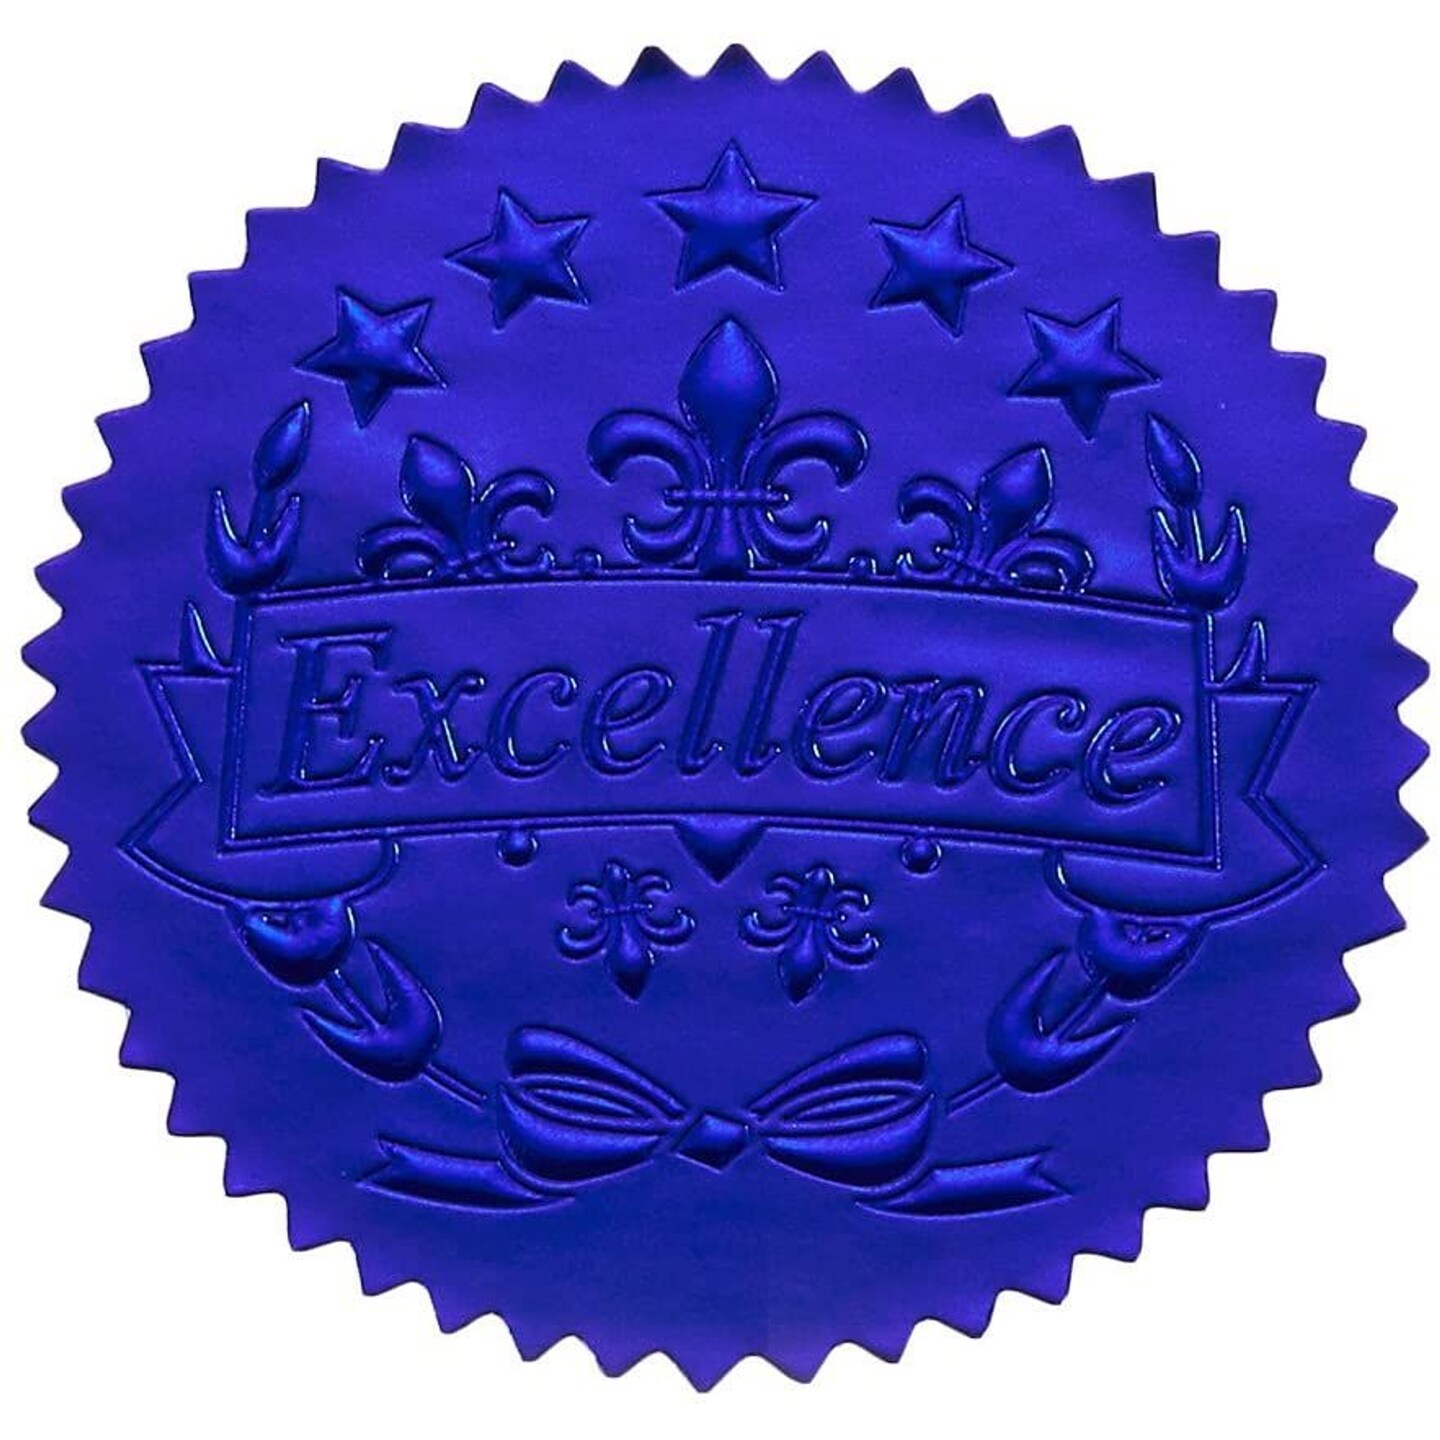 award certificate seal